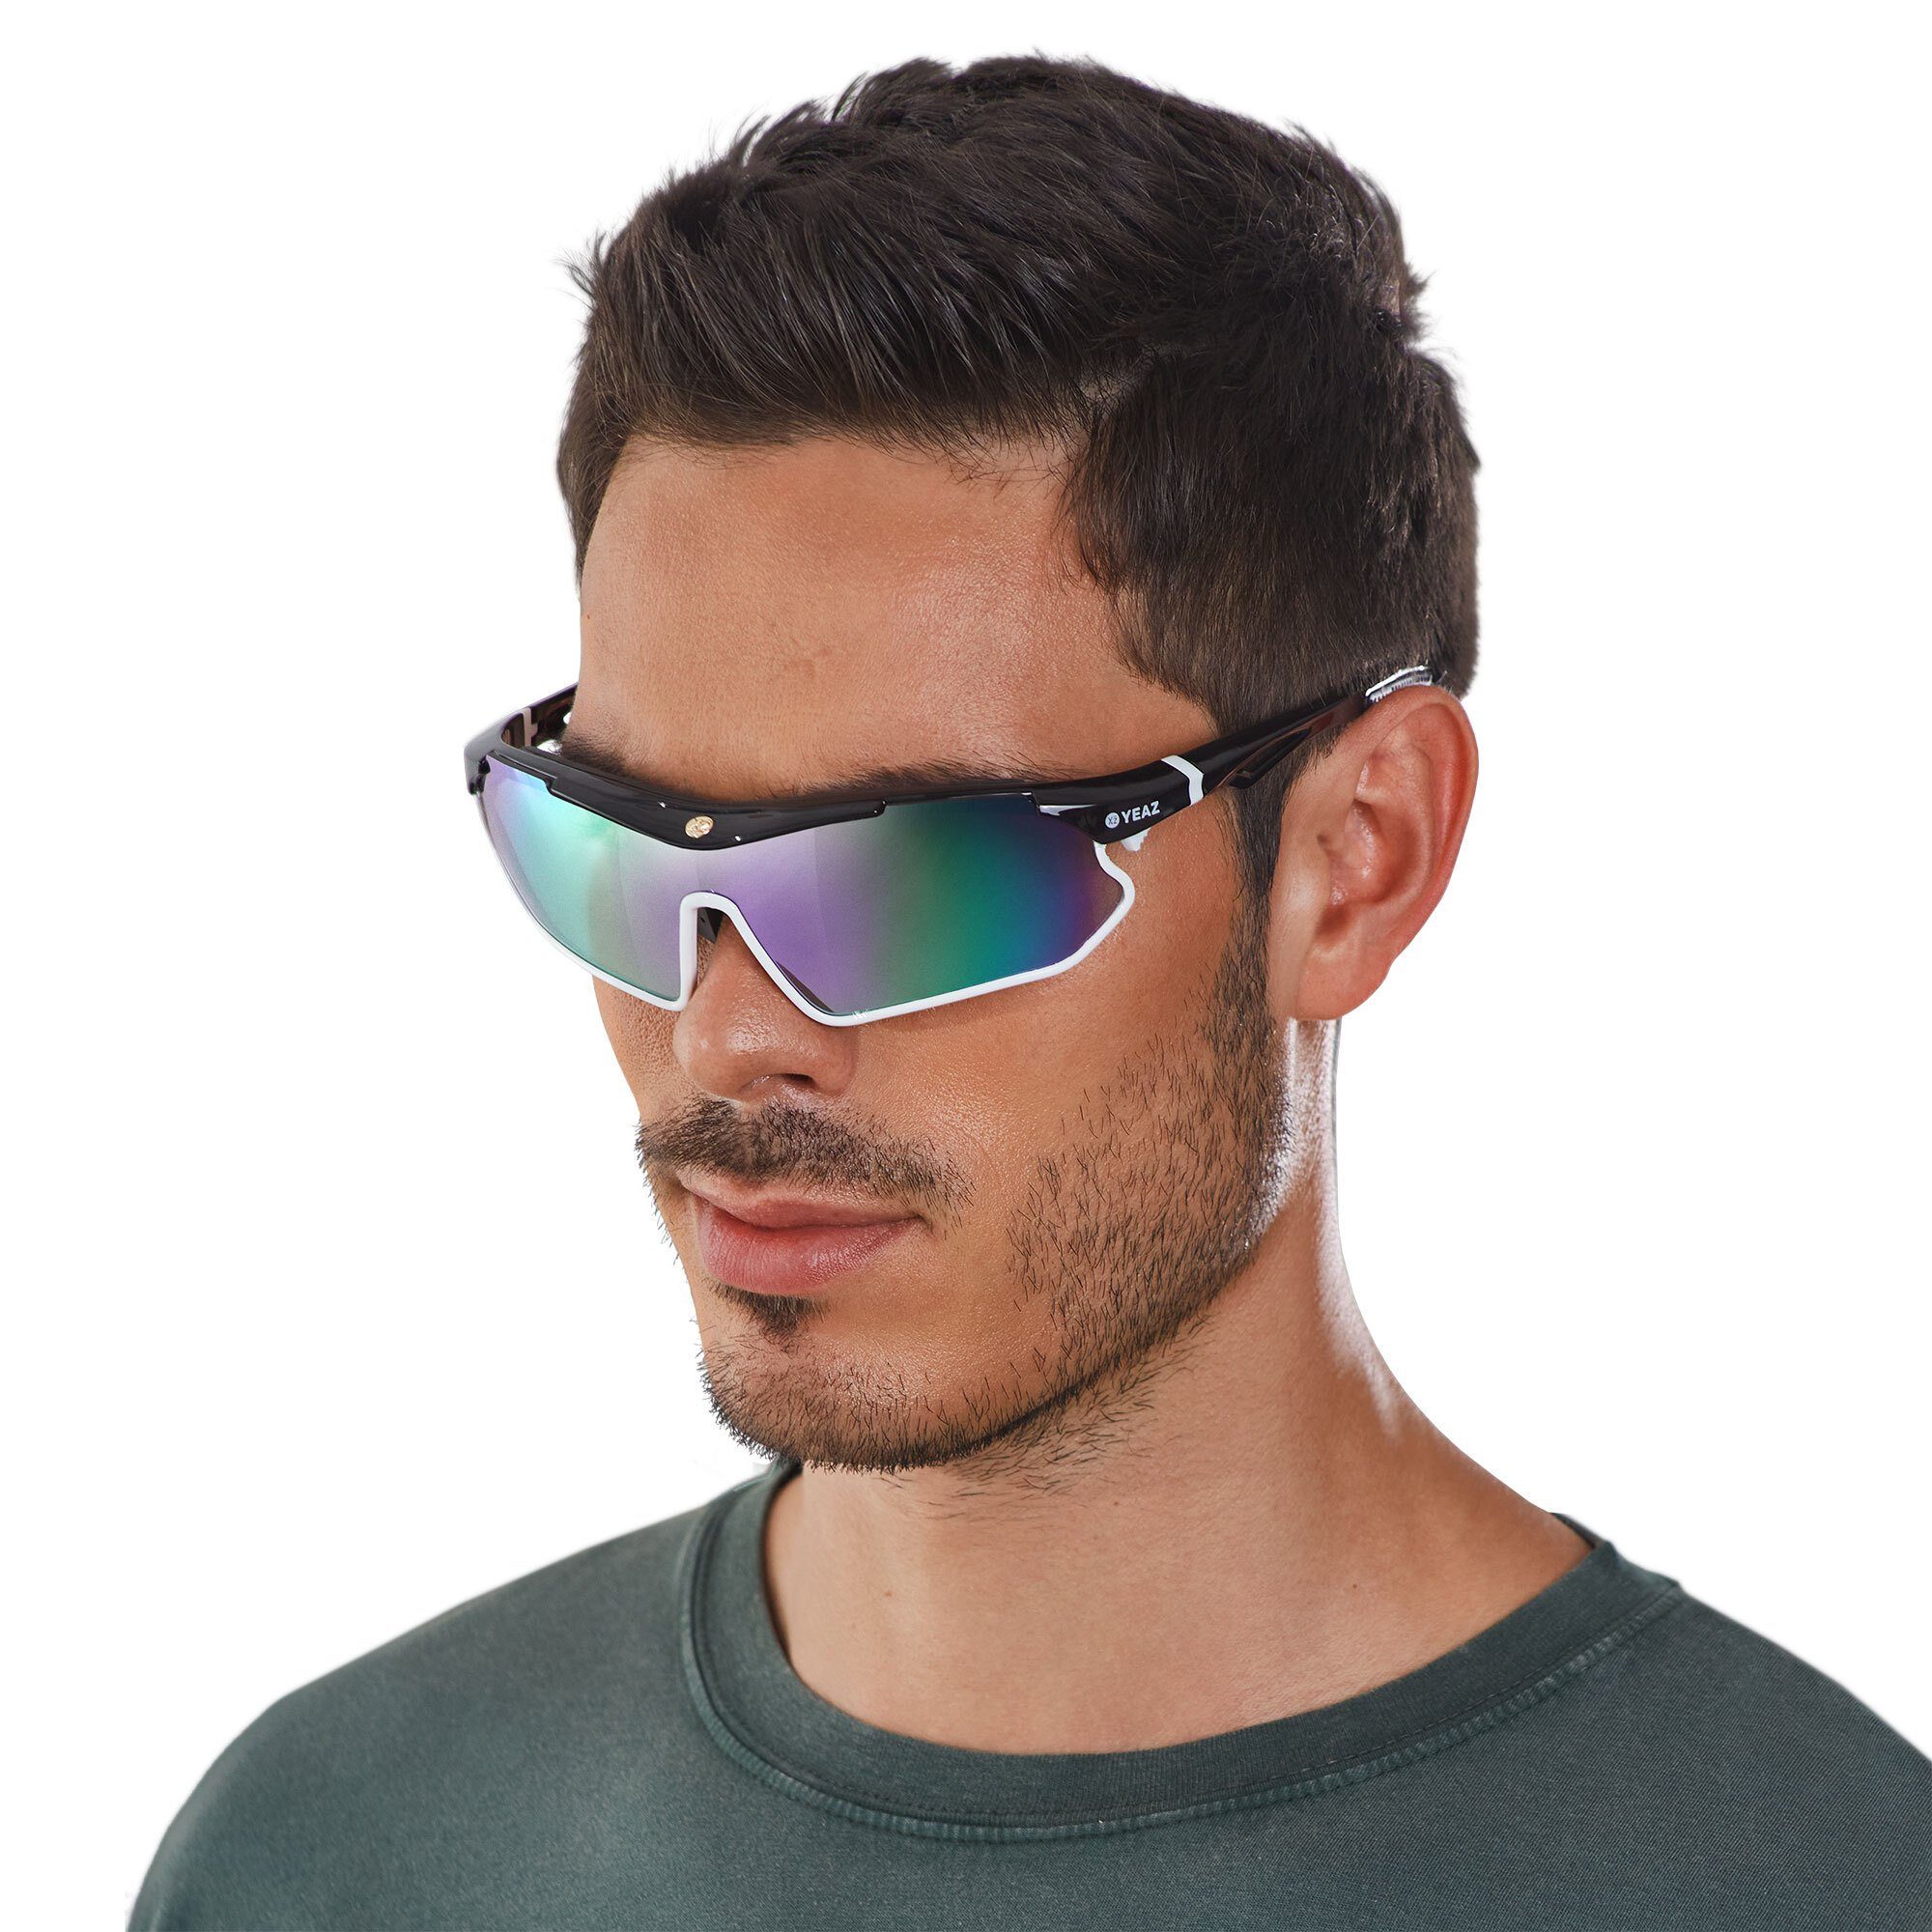 YEAZ Sportbrille SUNRAY sport-sonnenbrille schwarz/weiß/lila, Sport-Sonnenbrille schwarz/weiß/lila | Brillen